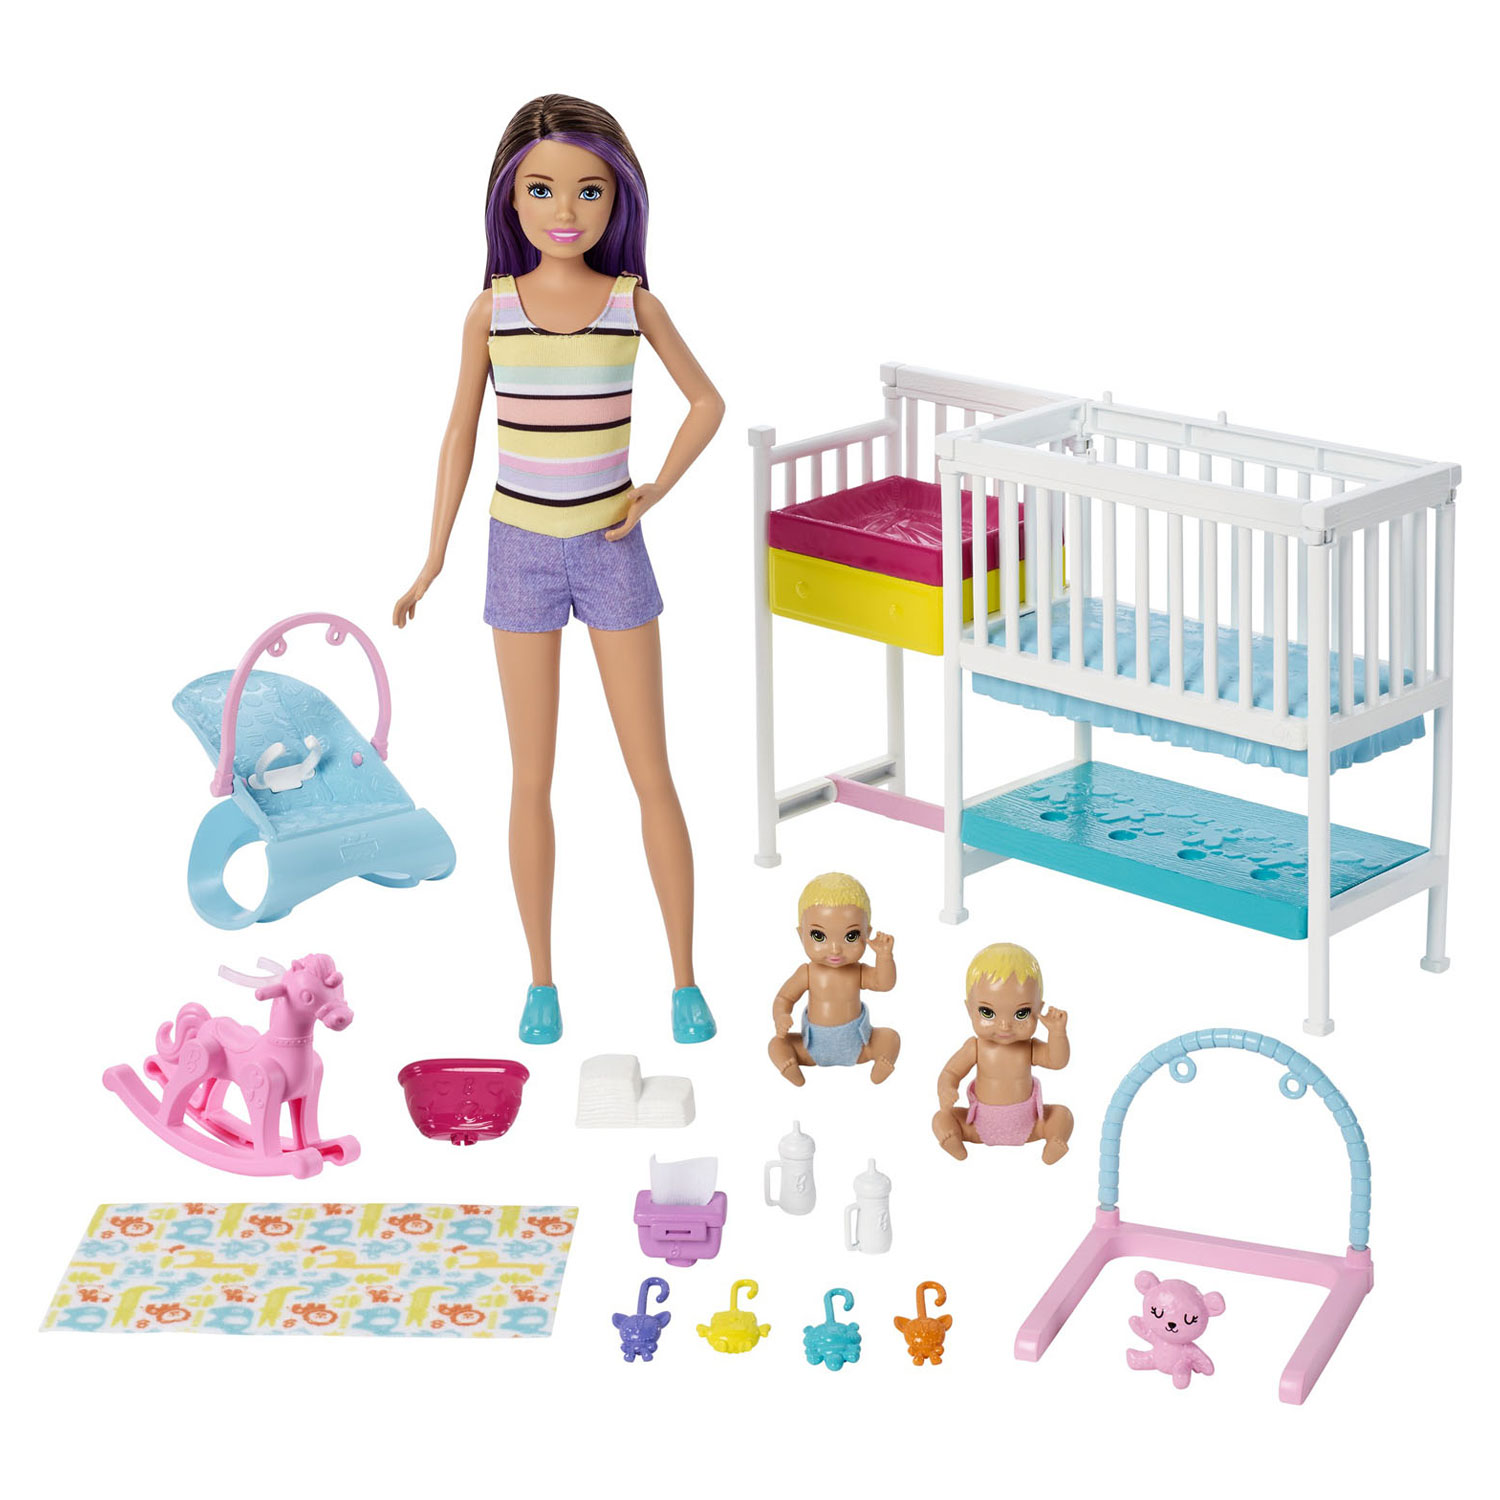 Barbie Skipper - Kinderspeelkamer Speelset